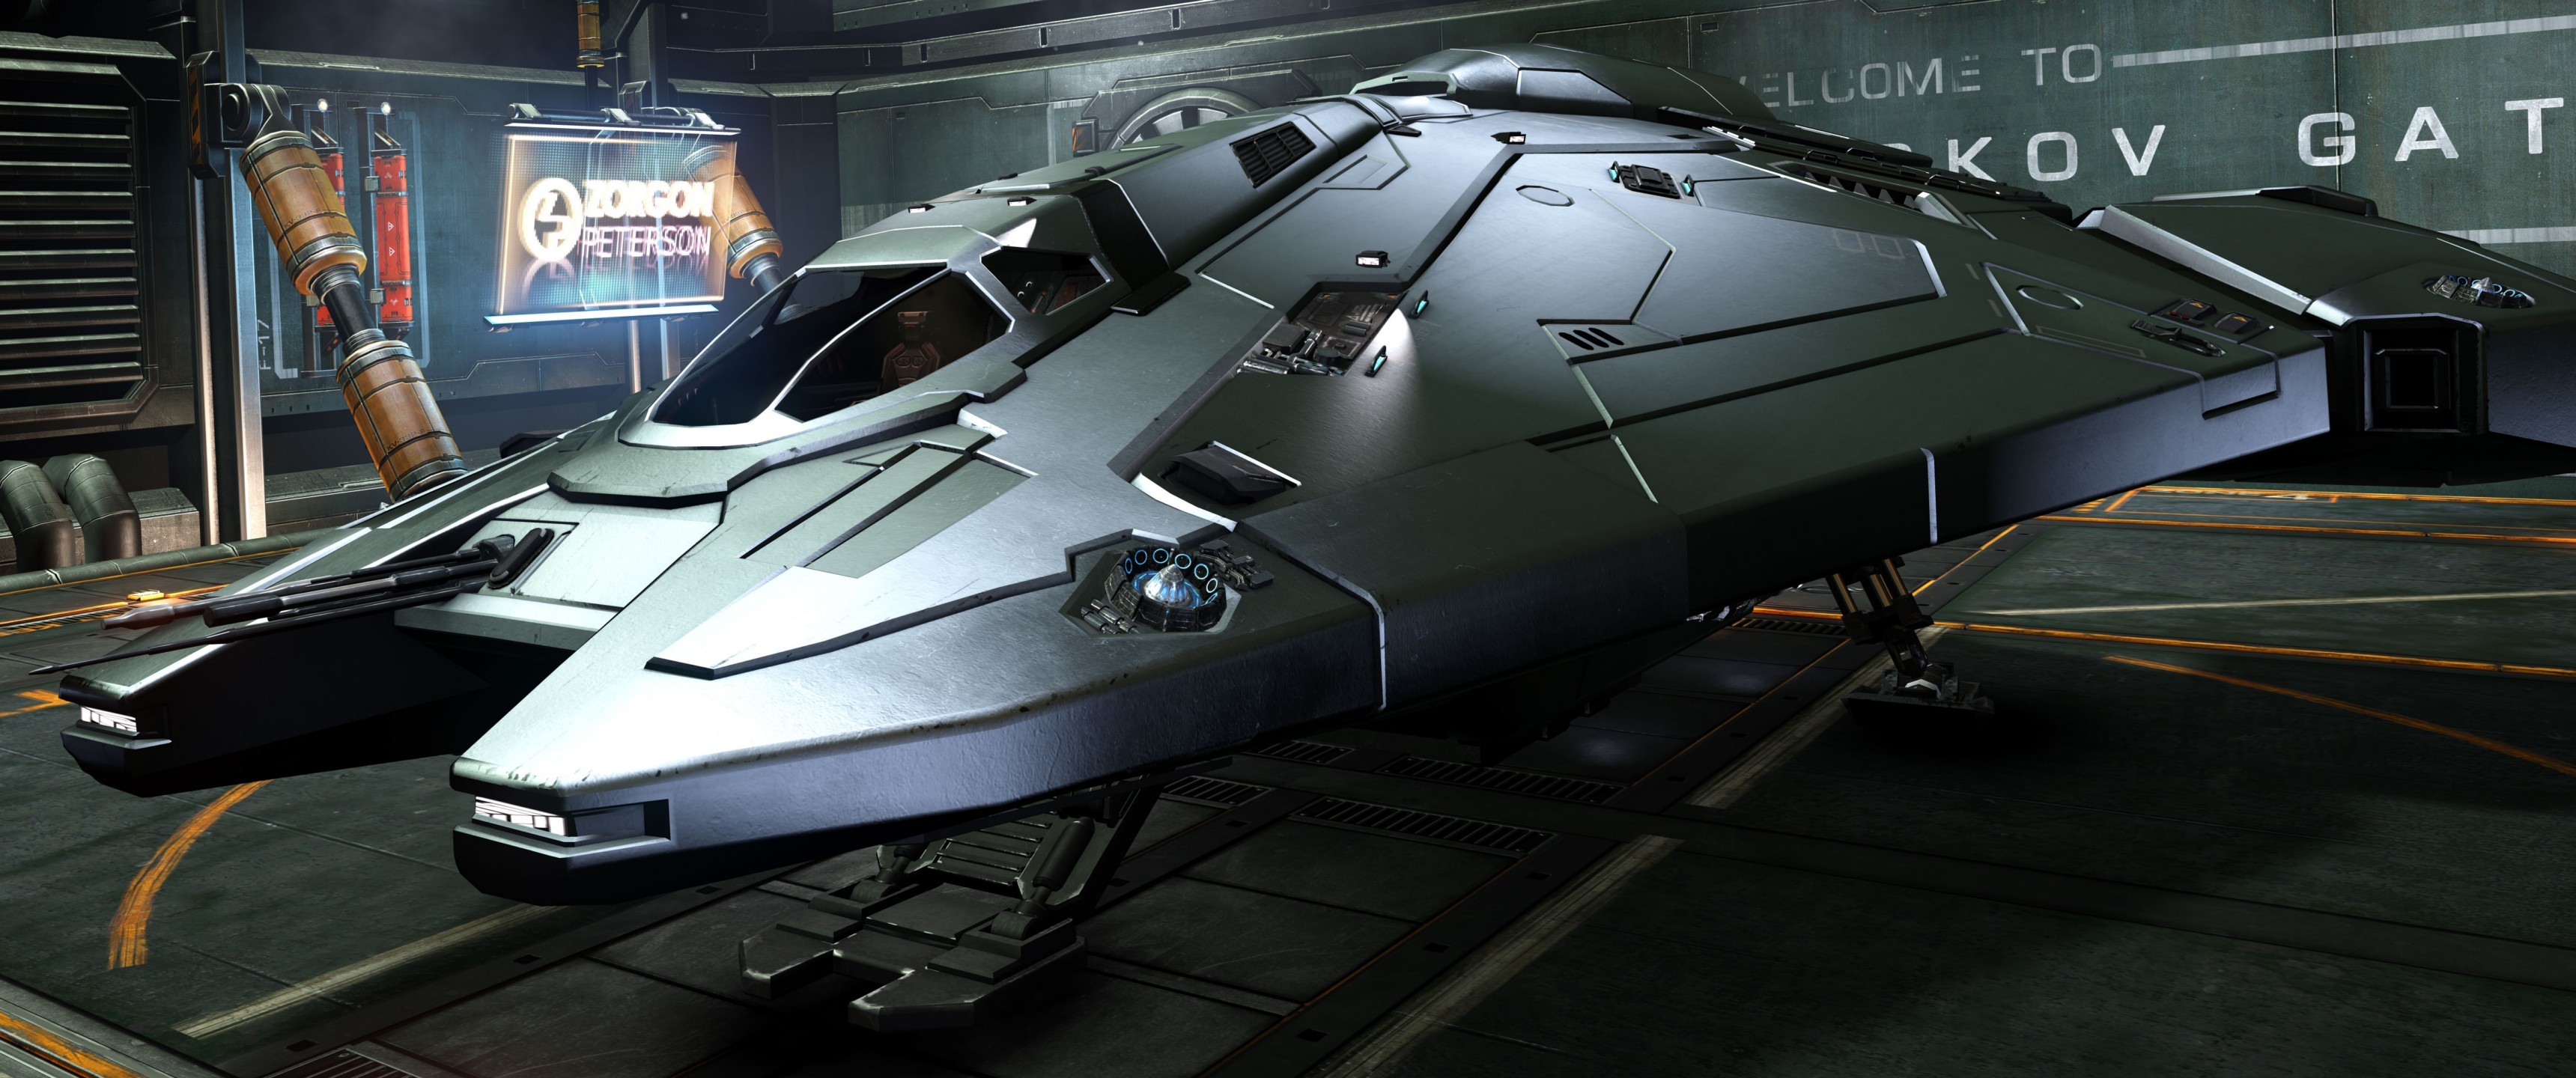 General 3440x1440 Elite: Dangerous spaceship CGI PC gaming vehicle